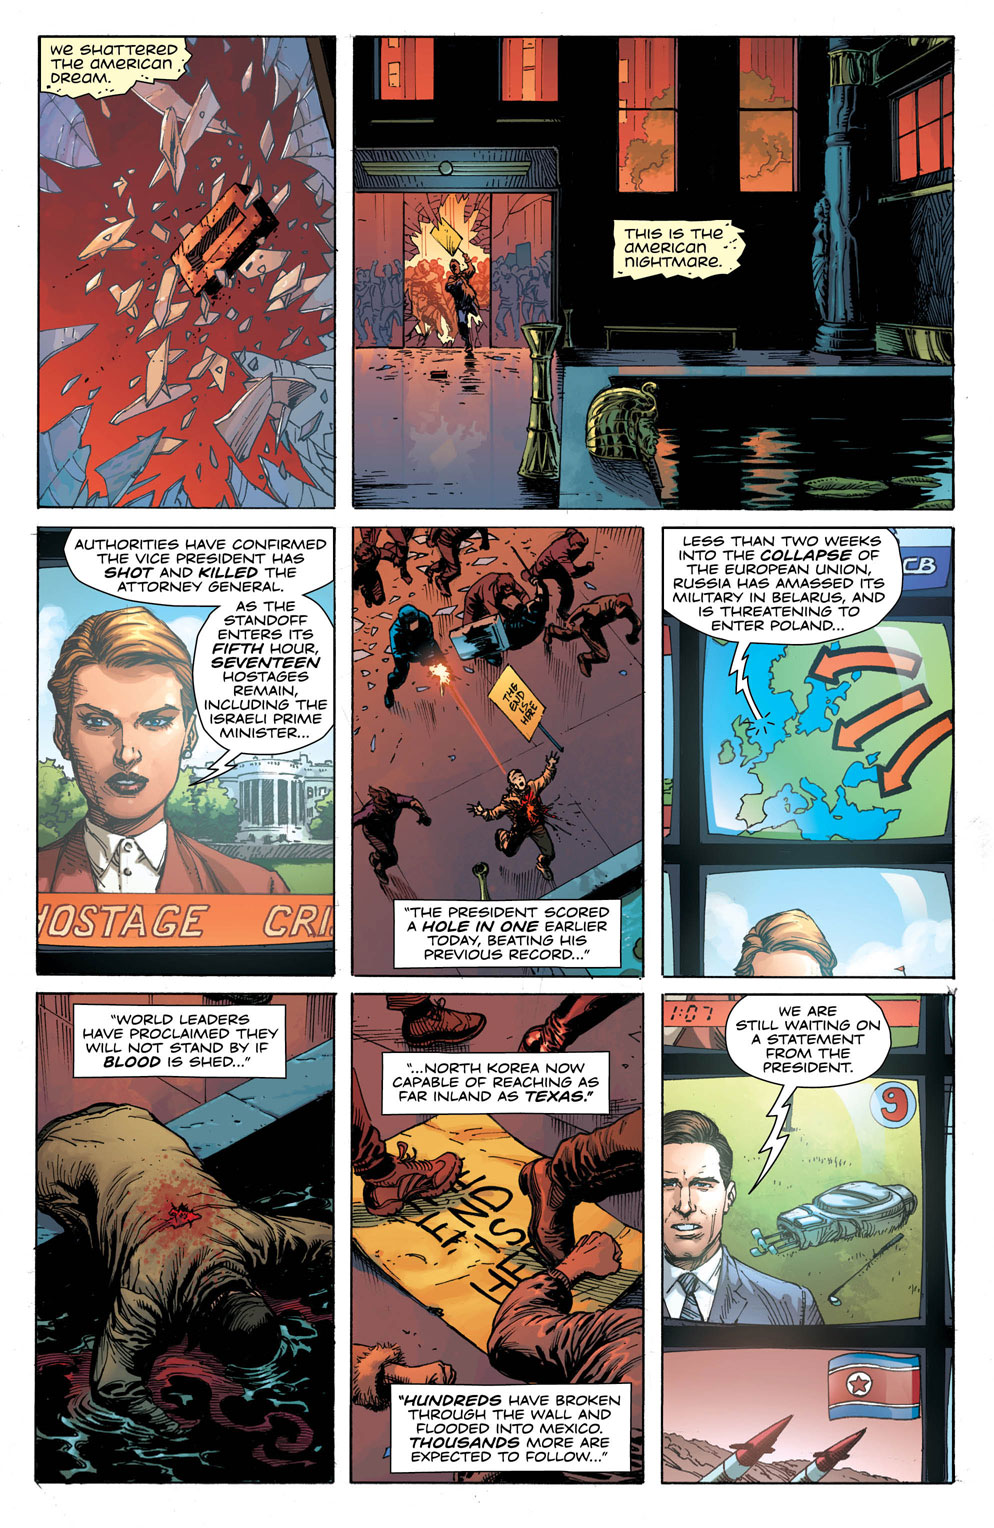 Doomsday Clock 1_2 - DC Comics News